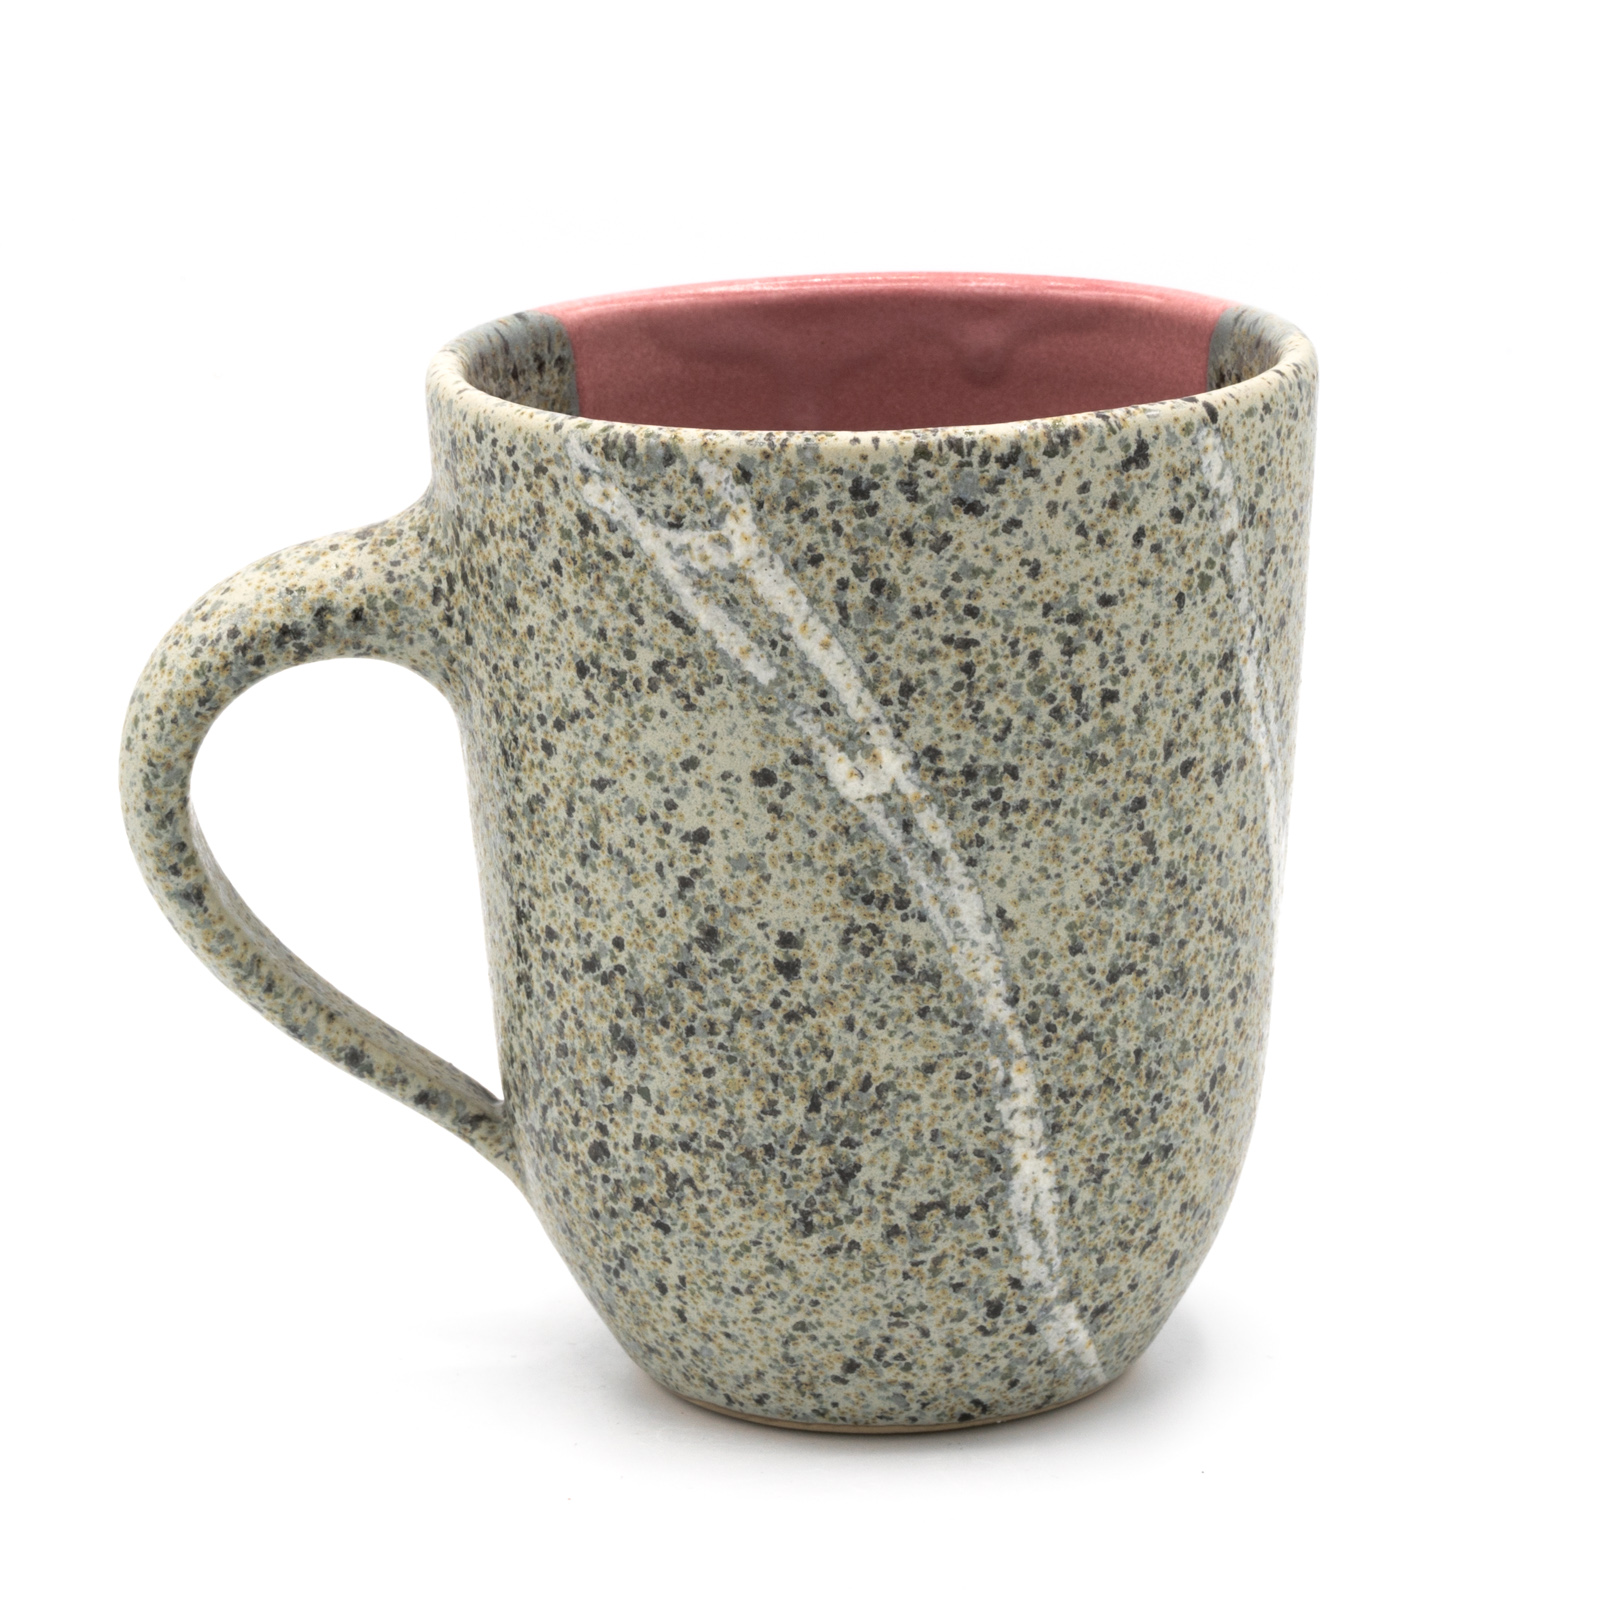 Kaffeebecher Keramik | Kaffeepott mit Rheinkiesel | rosa